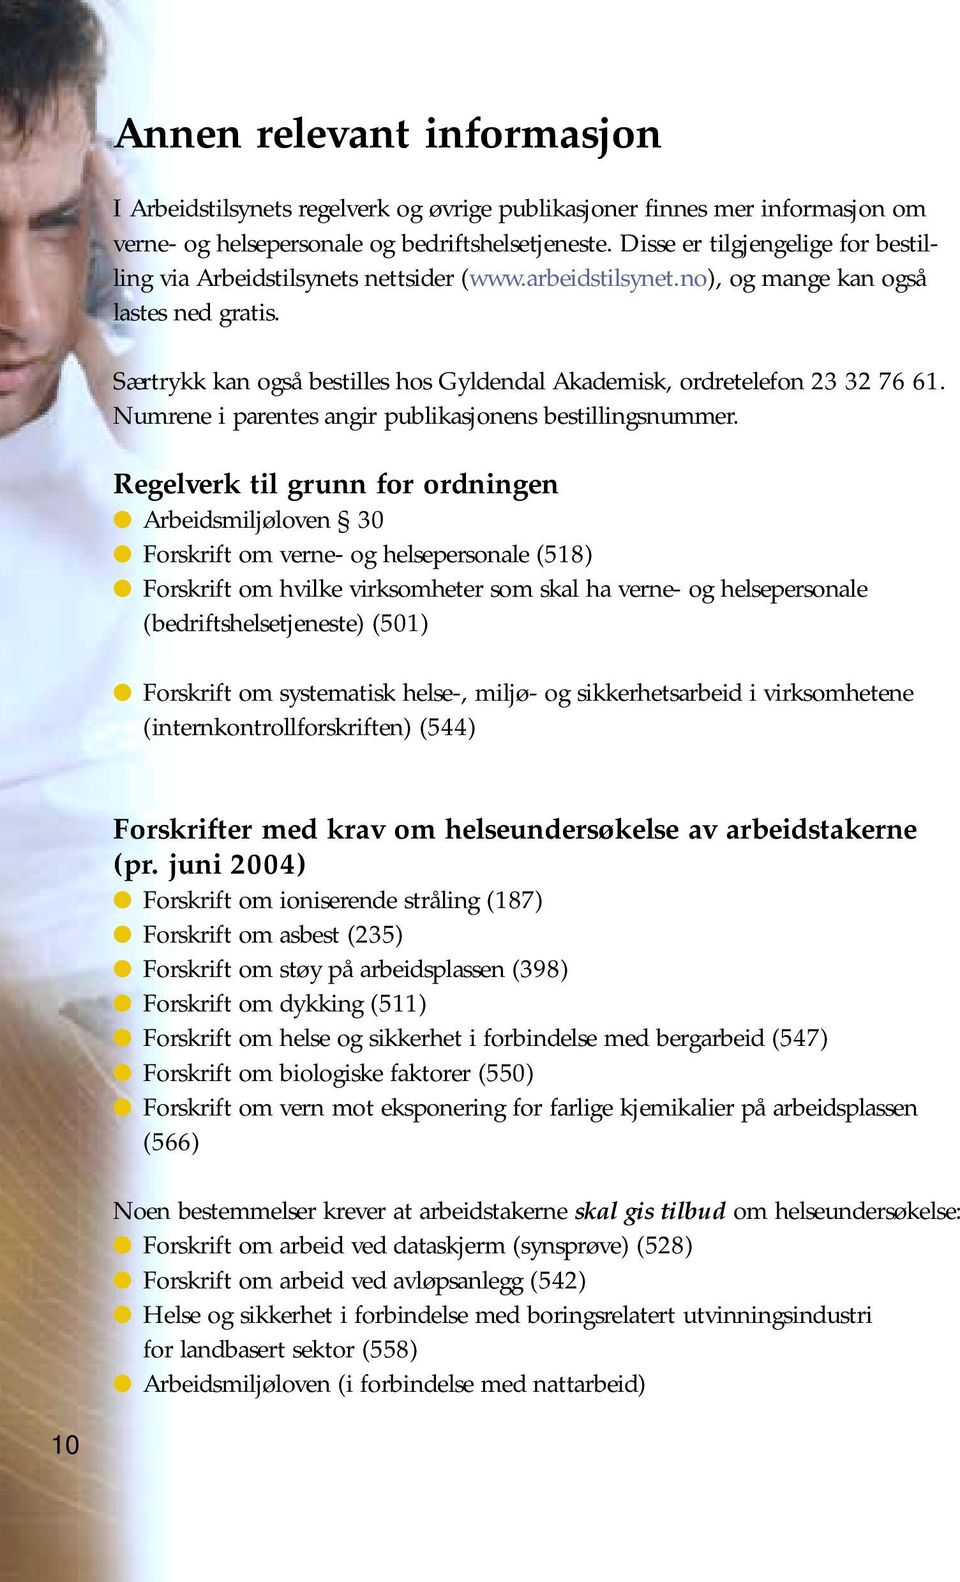 Særtrykk kan også bestilles hos Gyldendal Akademisk, ordretelefon 23 32 76 61. Numrene i parentes angir publikasjonens bestillingsnummer.